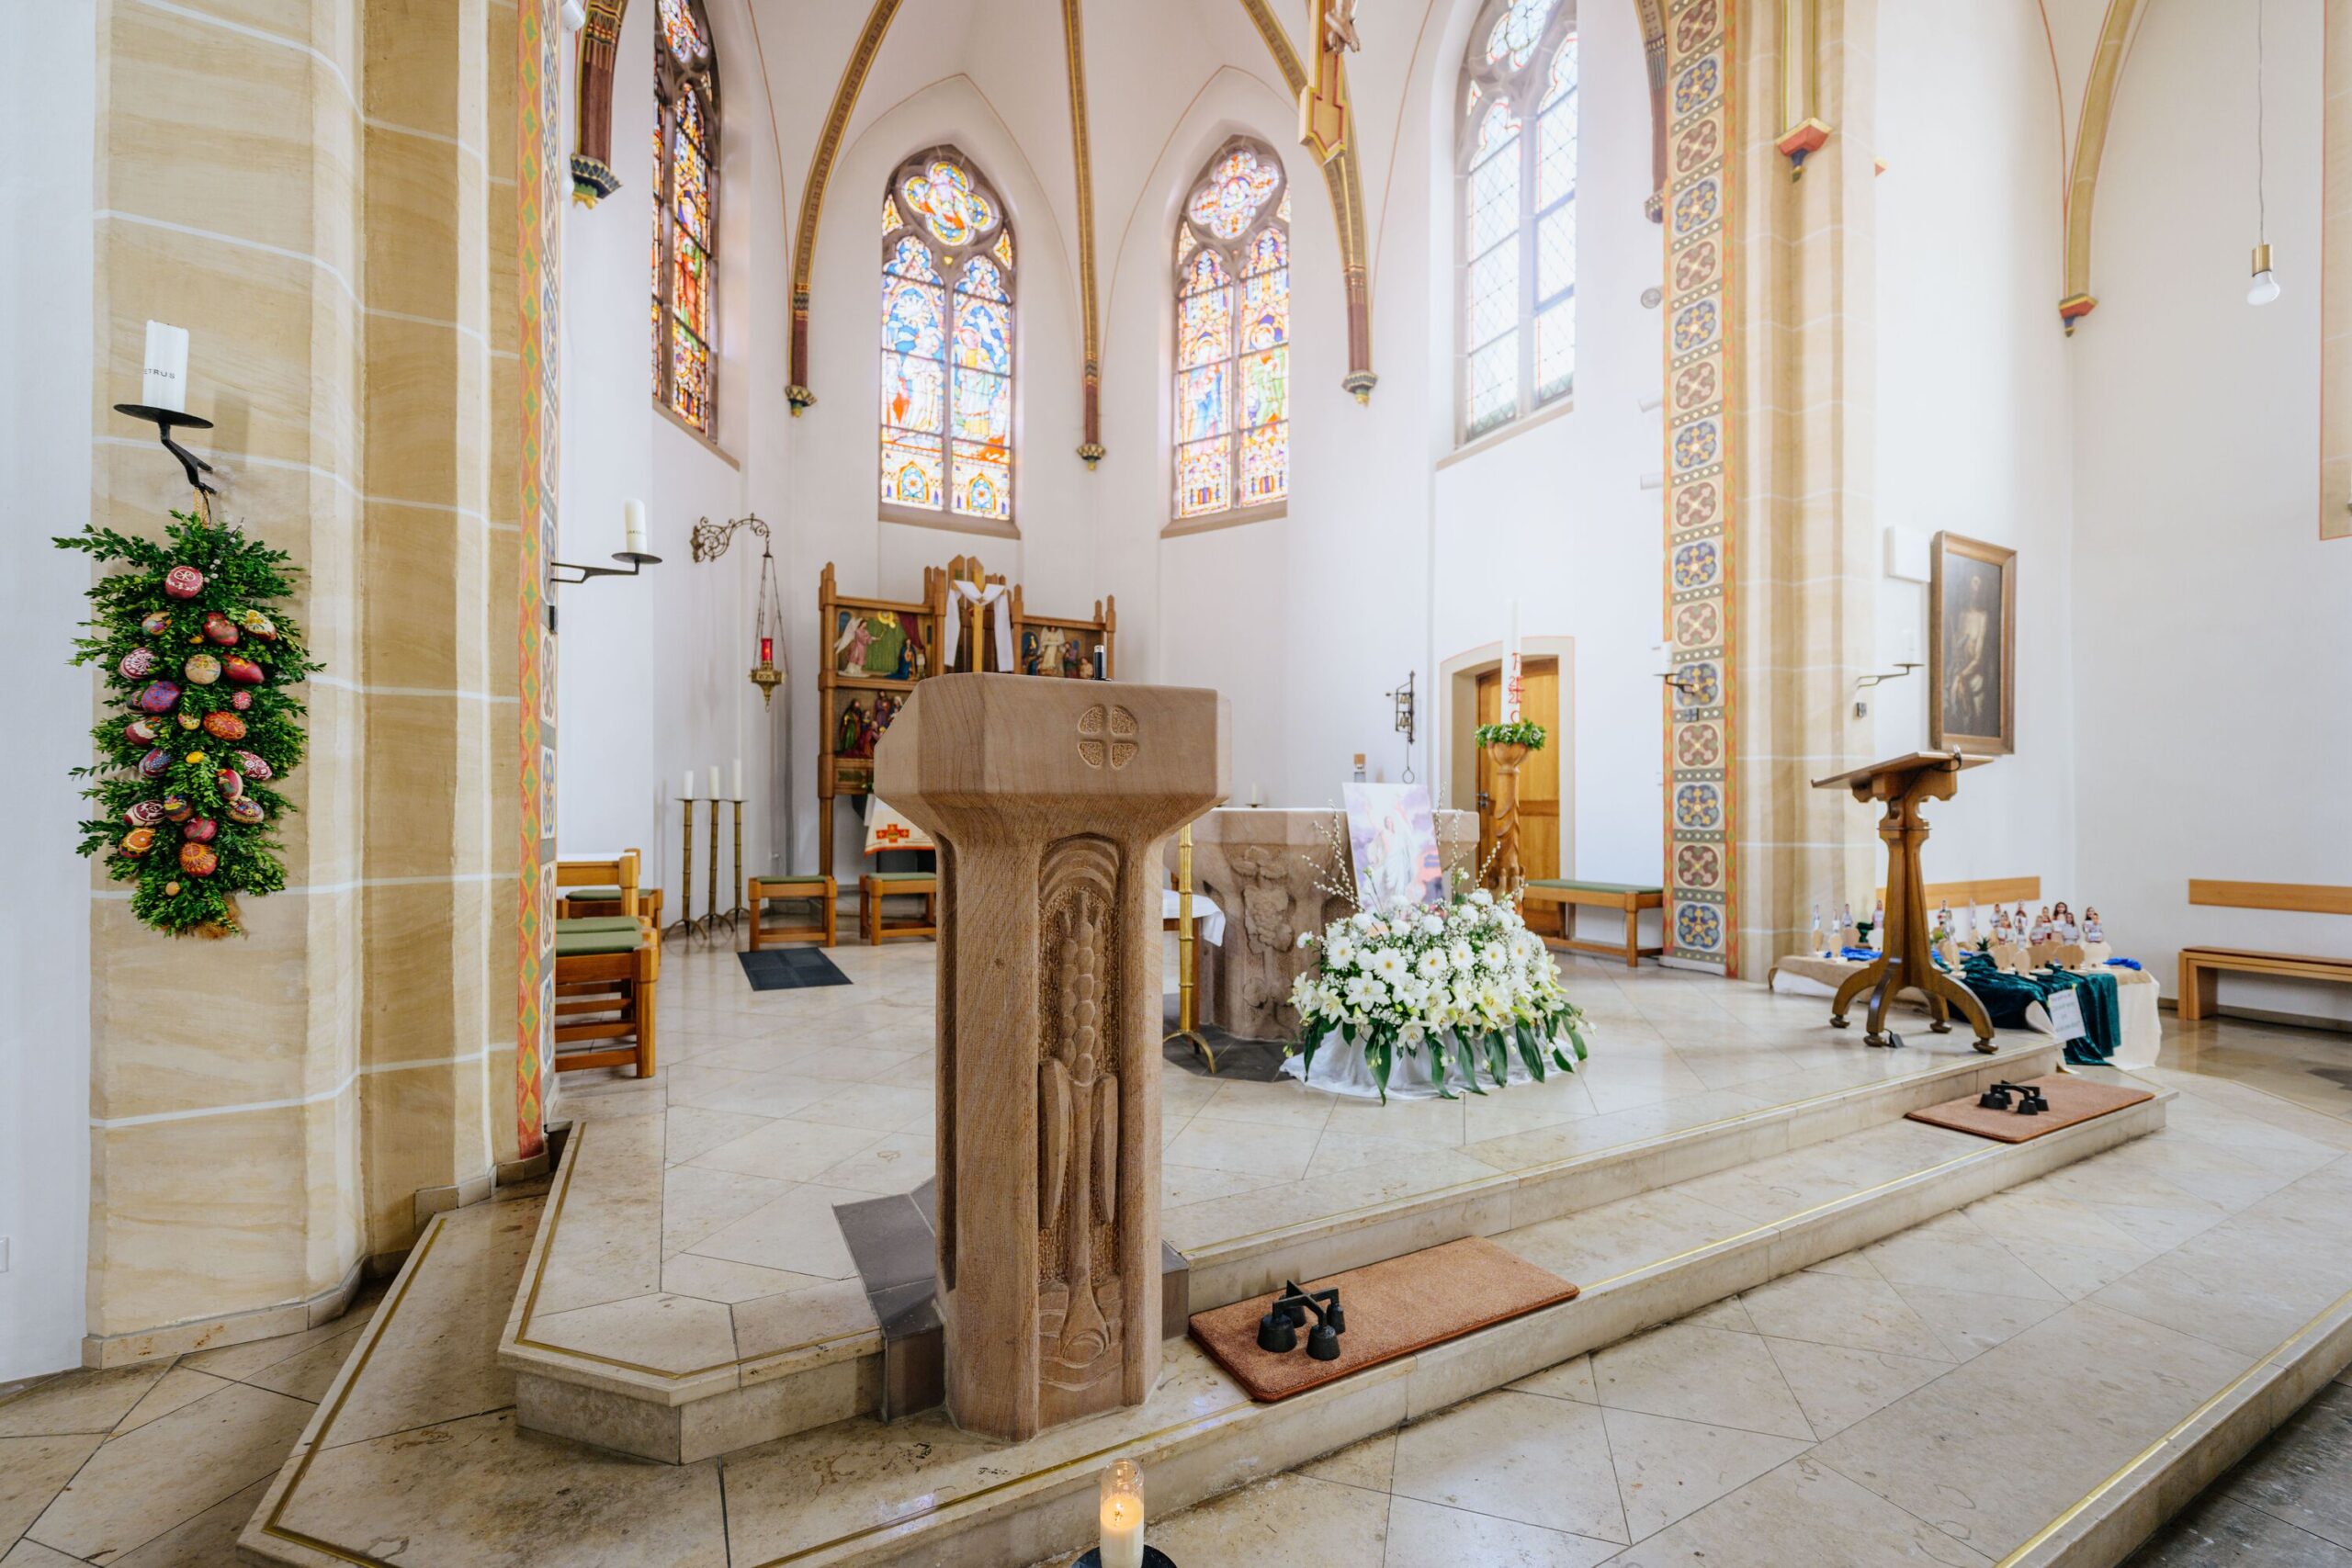 Innenraum der St. Johannes Baptist Kirche in Bad Arolsen